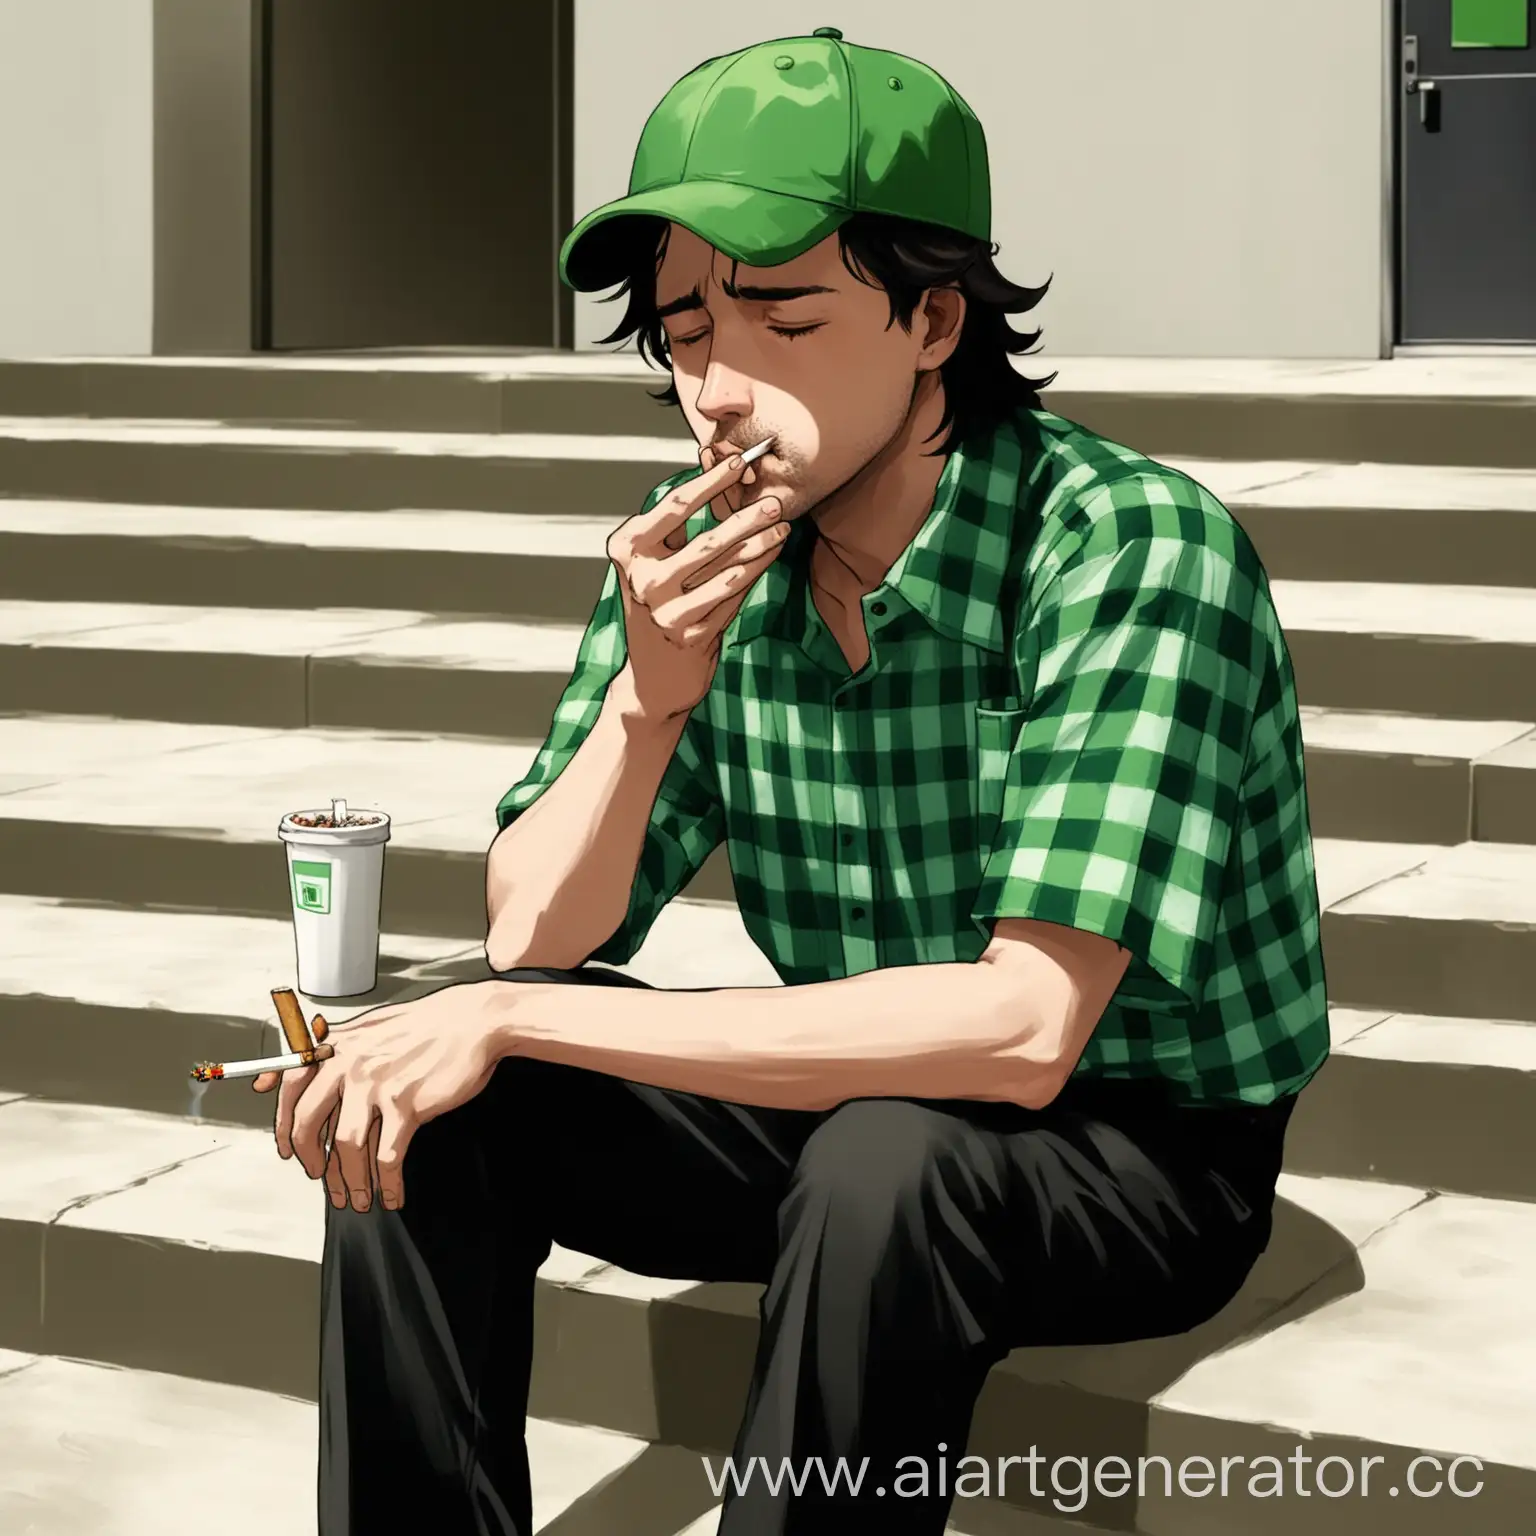 Парень, работник общепита, зелёная поло рубашка, зелёная кепка, чёрные штаны, волнистые тёмные волосы, вышел в обеденный перерыв на улицу, сидит на ступеньках, сигарета во рту, устал от работы